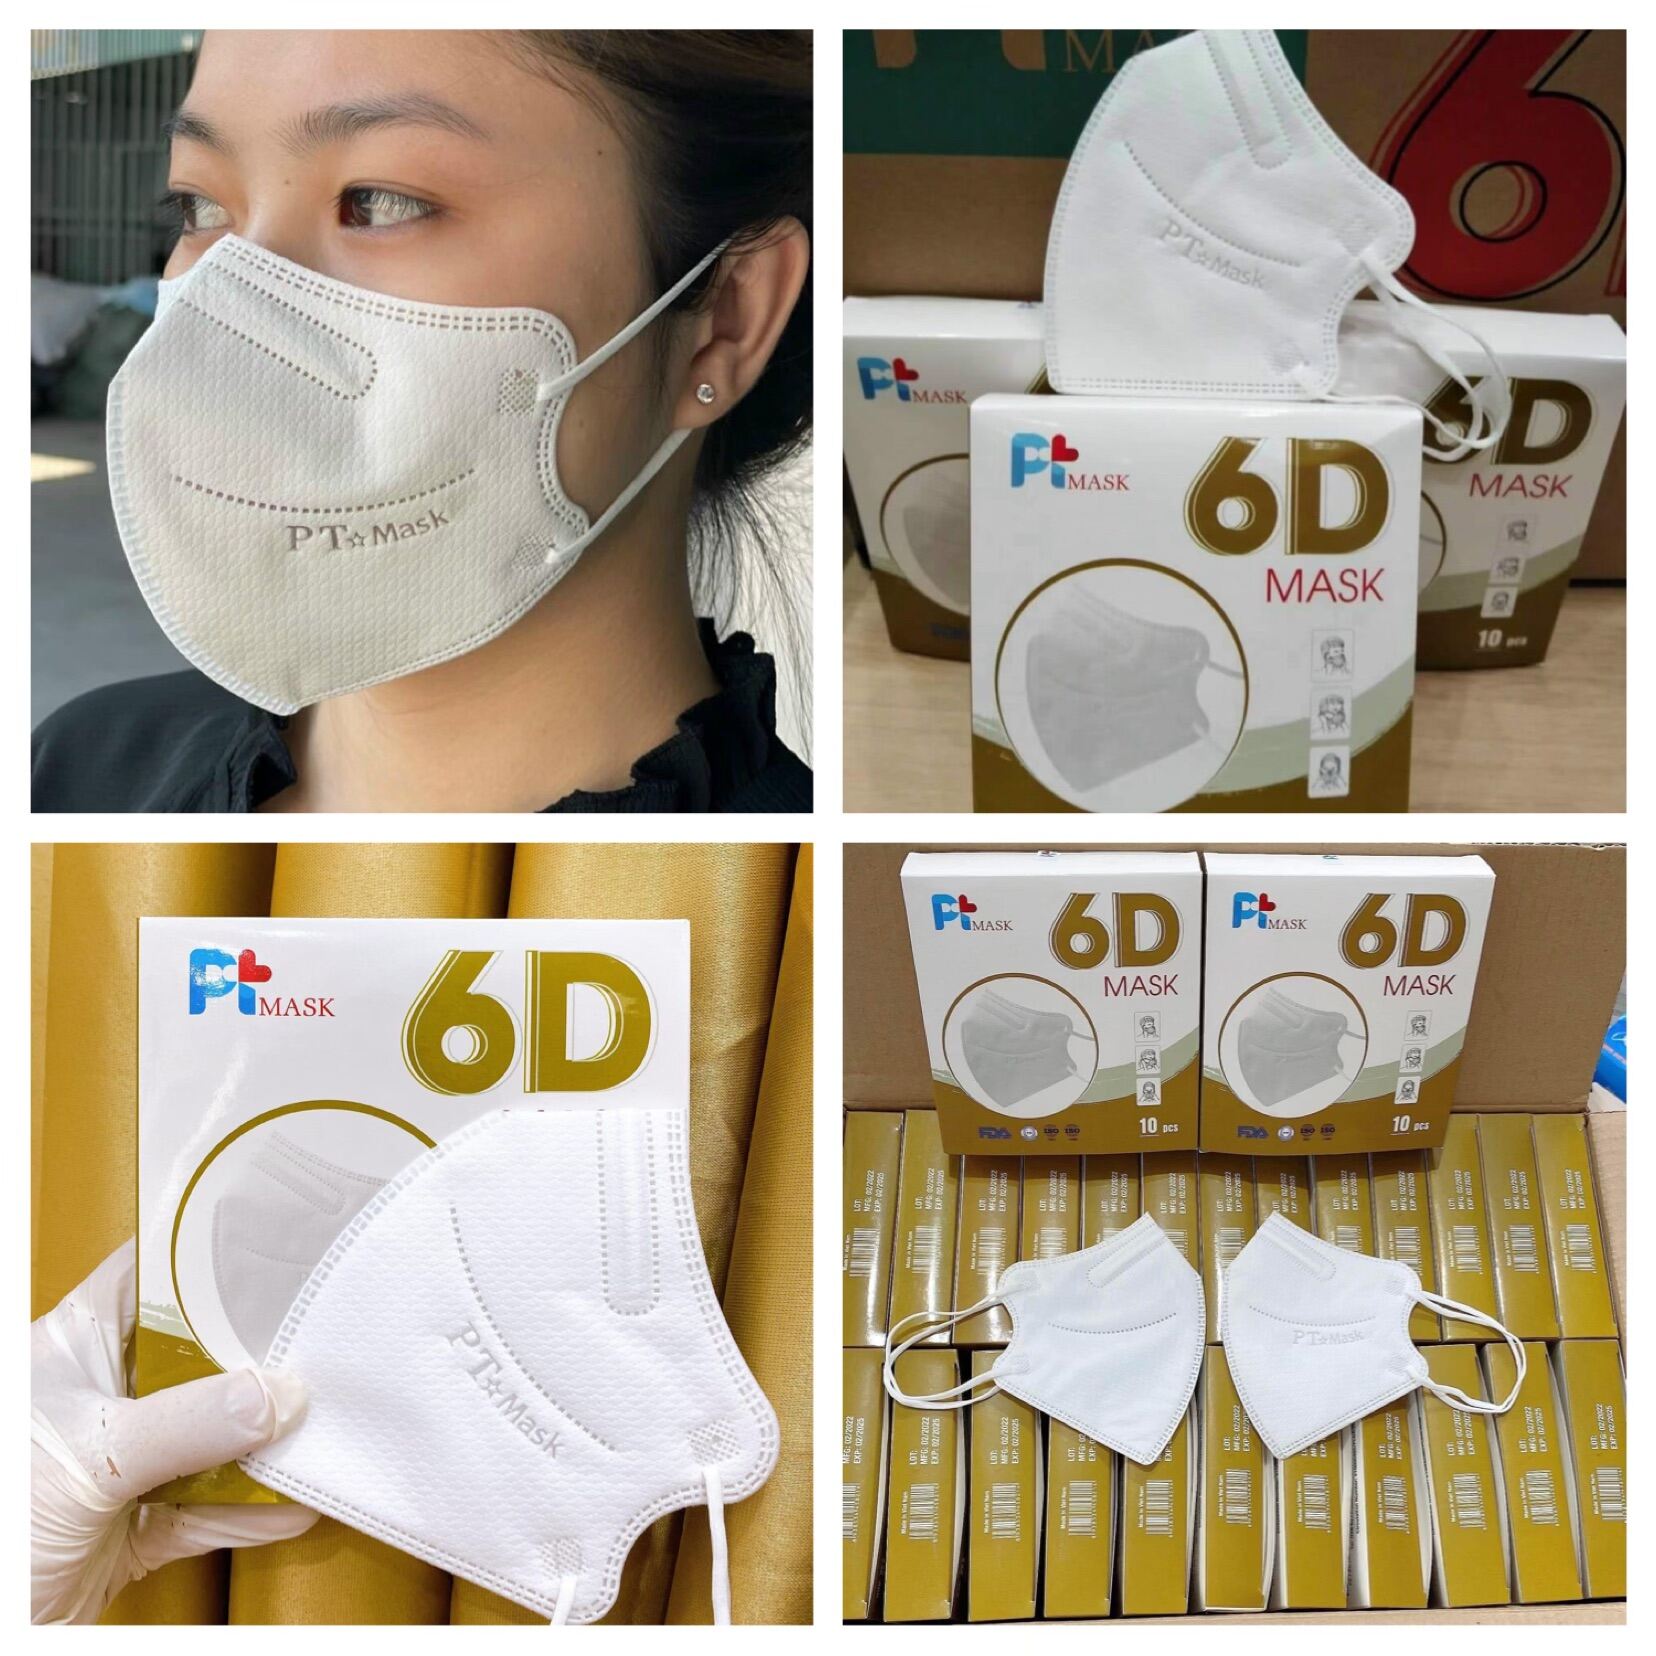 [ 50 Chiếc 6D Mask PT ] 5 Hộp Khẩu Trang 6D Mask PT Màu Trắng Form Mang lên Bao Đẹp ( Vỏ Hộp Thay Đổi Theo Từng Đợt ạ )